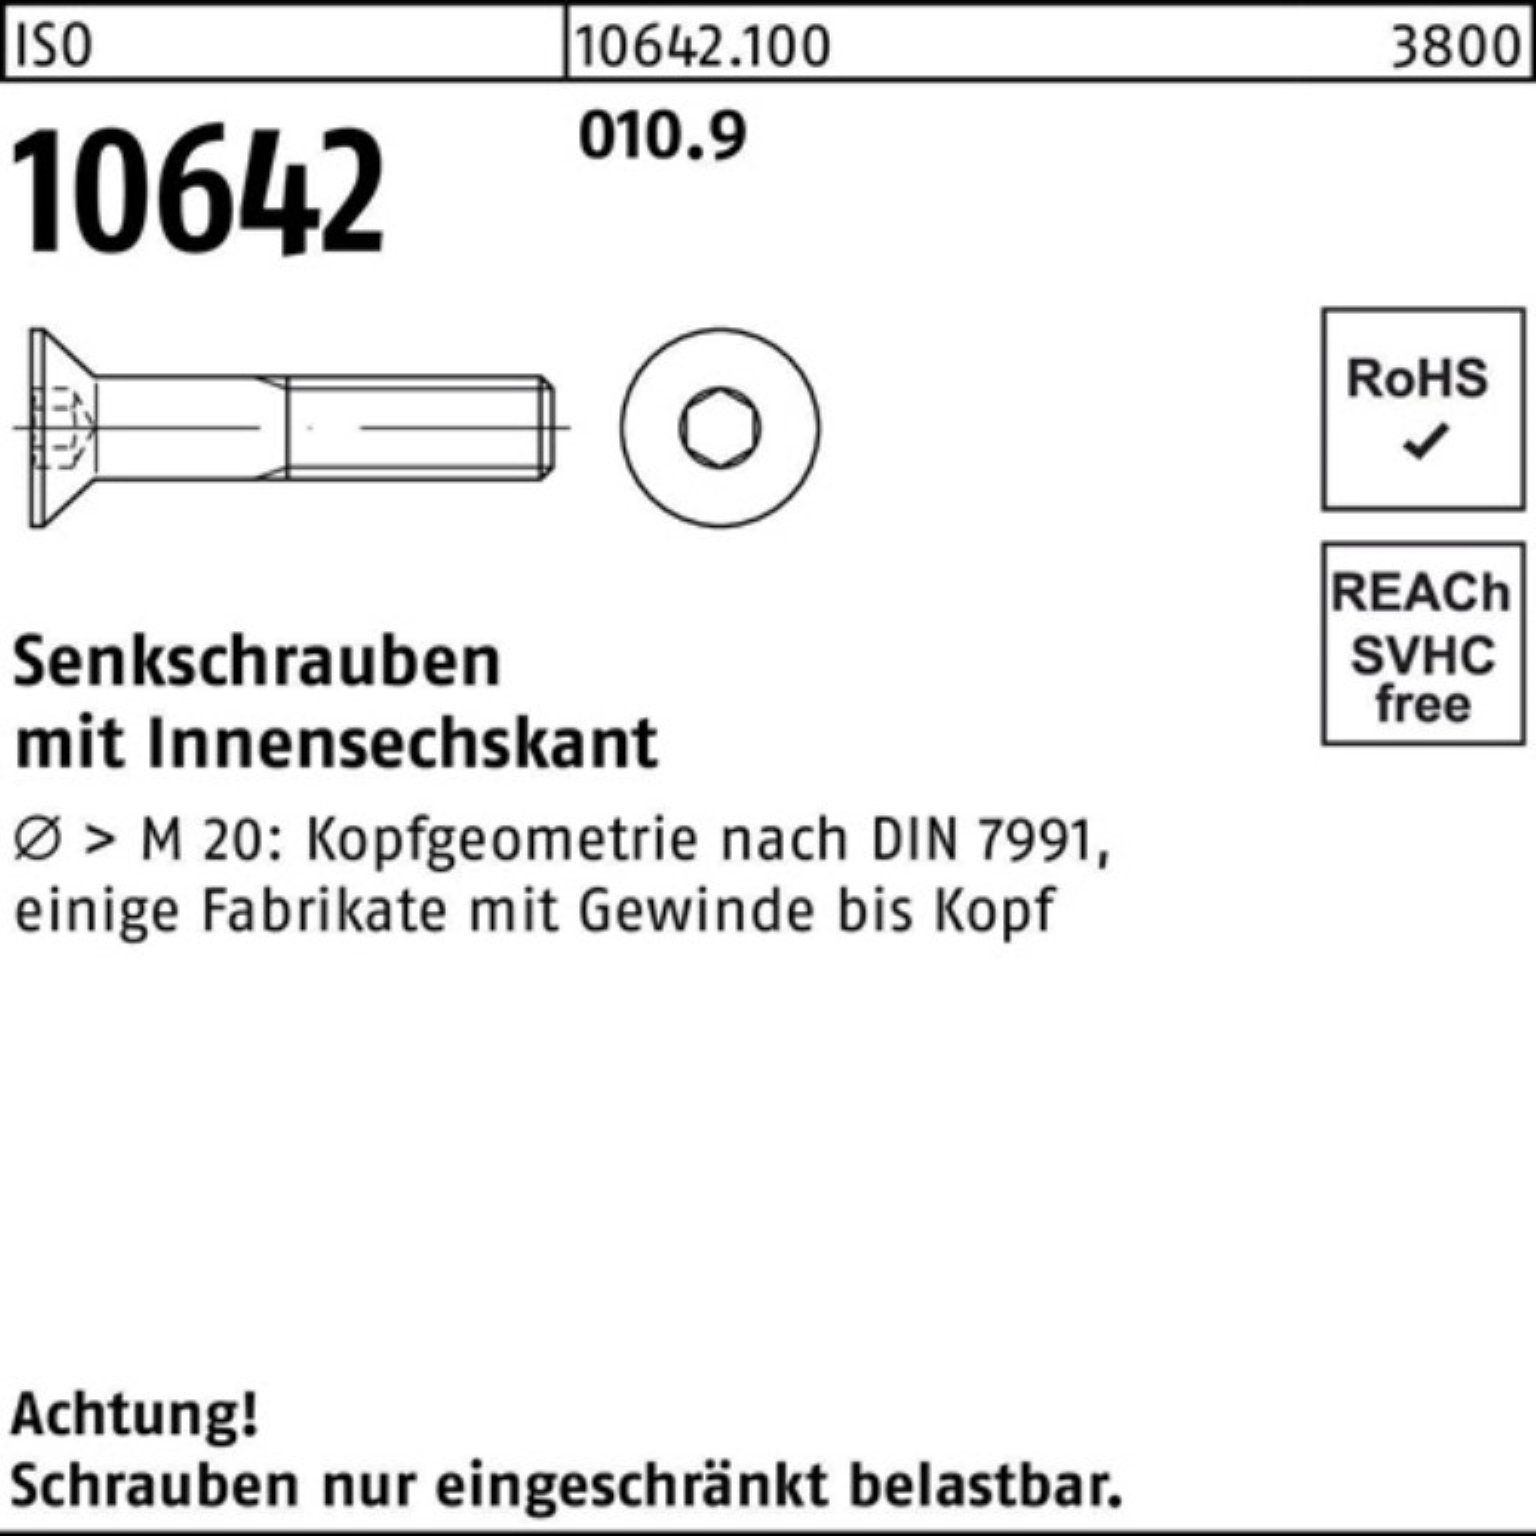 Reyher Senkschraube 10642 500 14 ISO 500er M4x Pack IS 010.9 Stück Senkschraube Innen-6kt